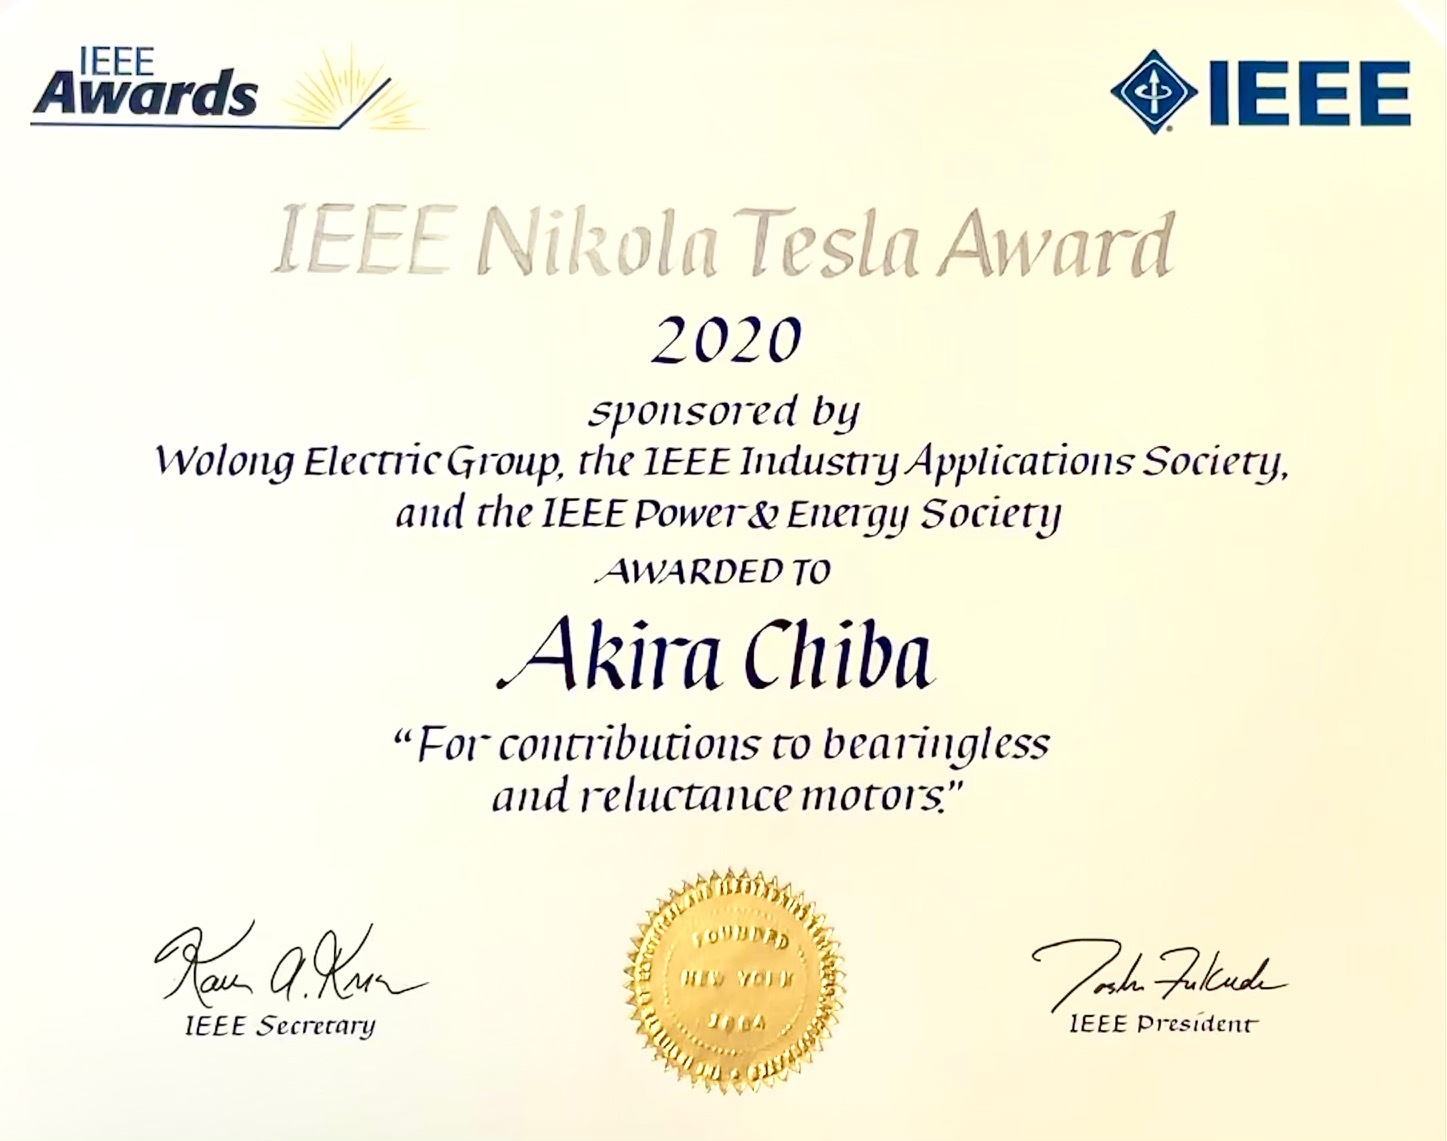 IEEE二コラ・テスラ賞の賞状